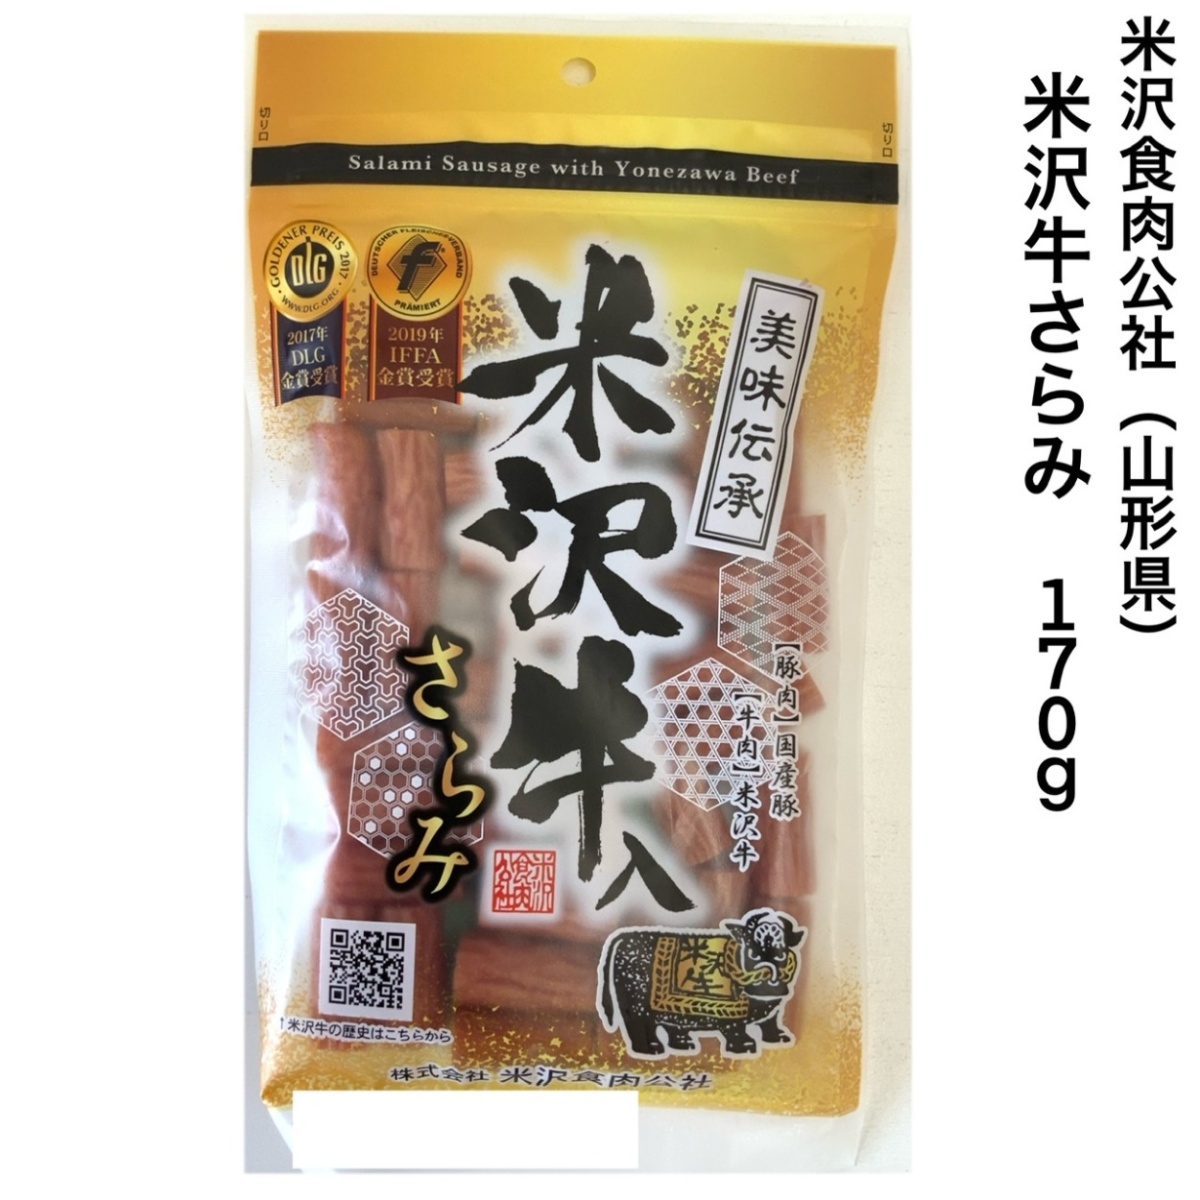 米沢食肉公社 米沢牛入りサラミ 170g×1袋 サラミ、肉のおつまみ珍味の商品画像